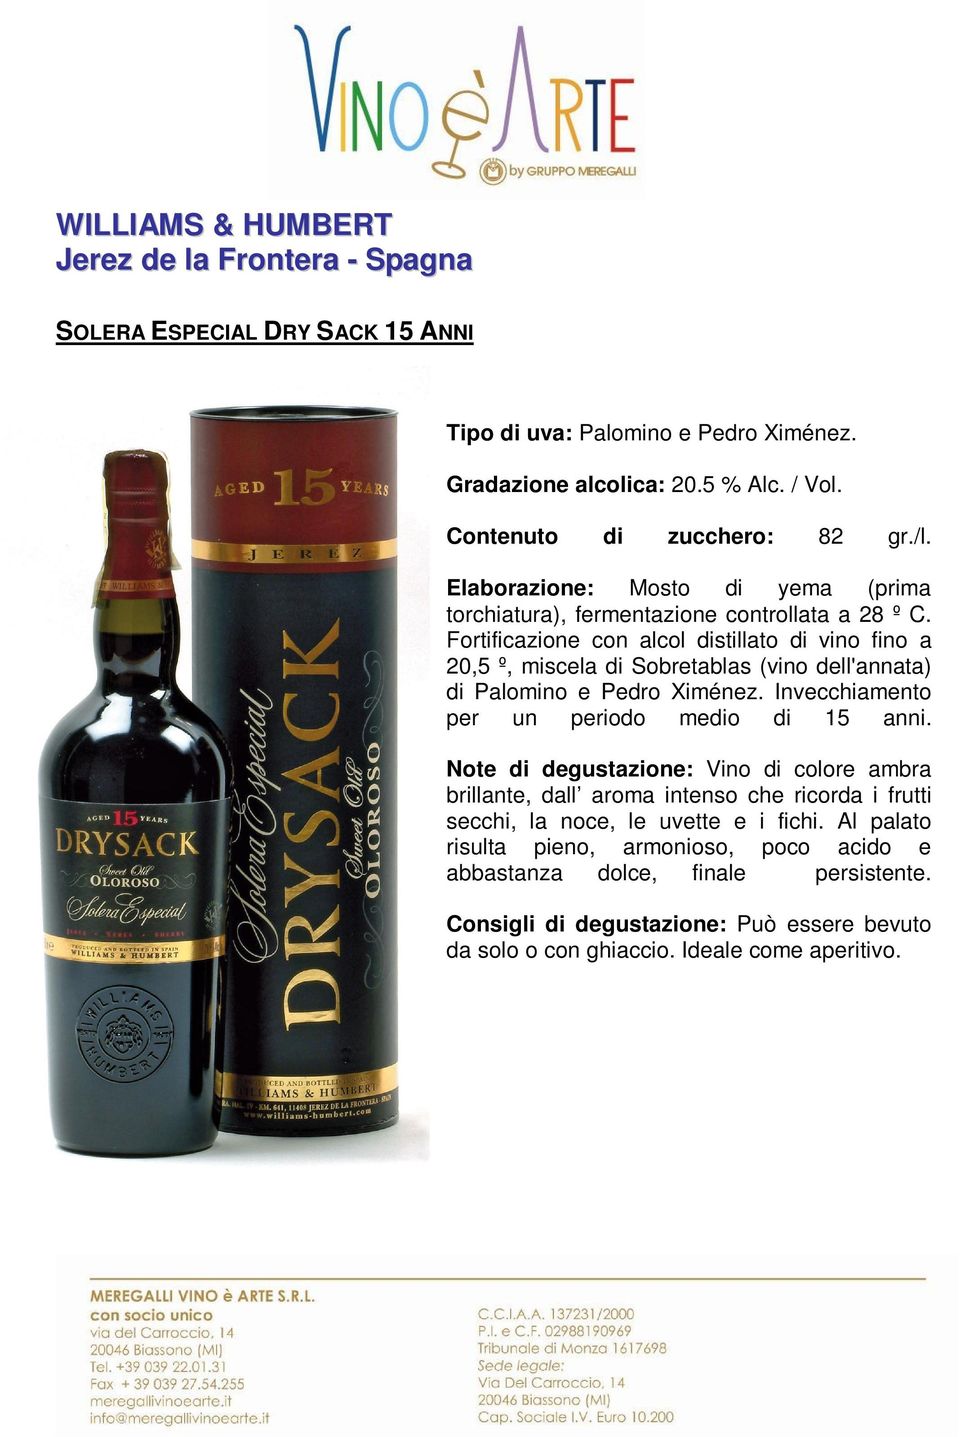 Fortificazione con alcol distillato di vino fino a 20,5 º, miscela di Sobretablas (vino dell'annata) di Palomino e Pedro Ximénez. Invecchiamento per un periodo medio di 15 anni.